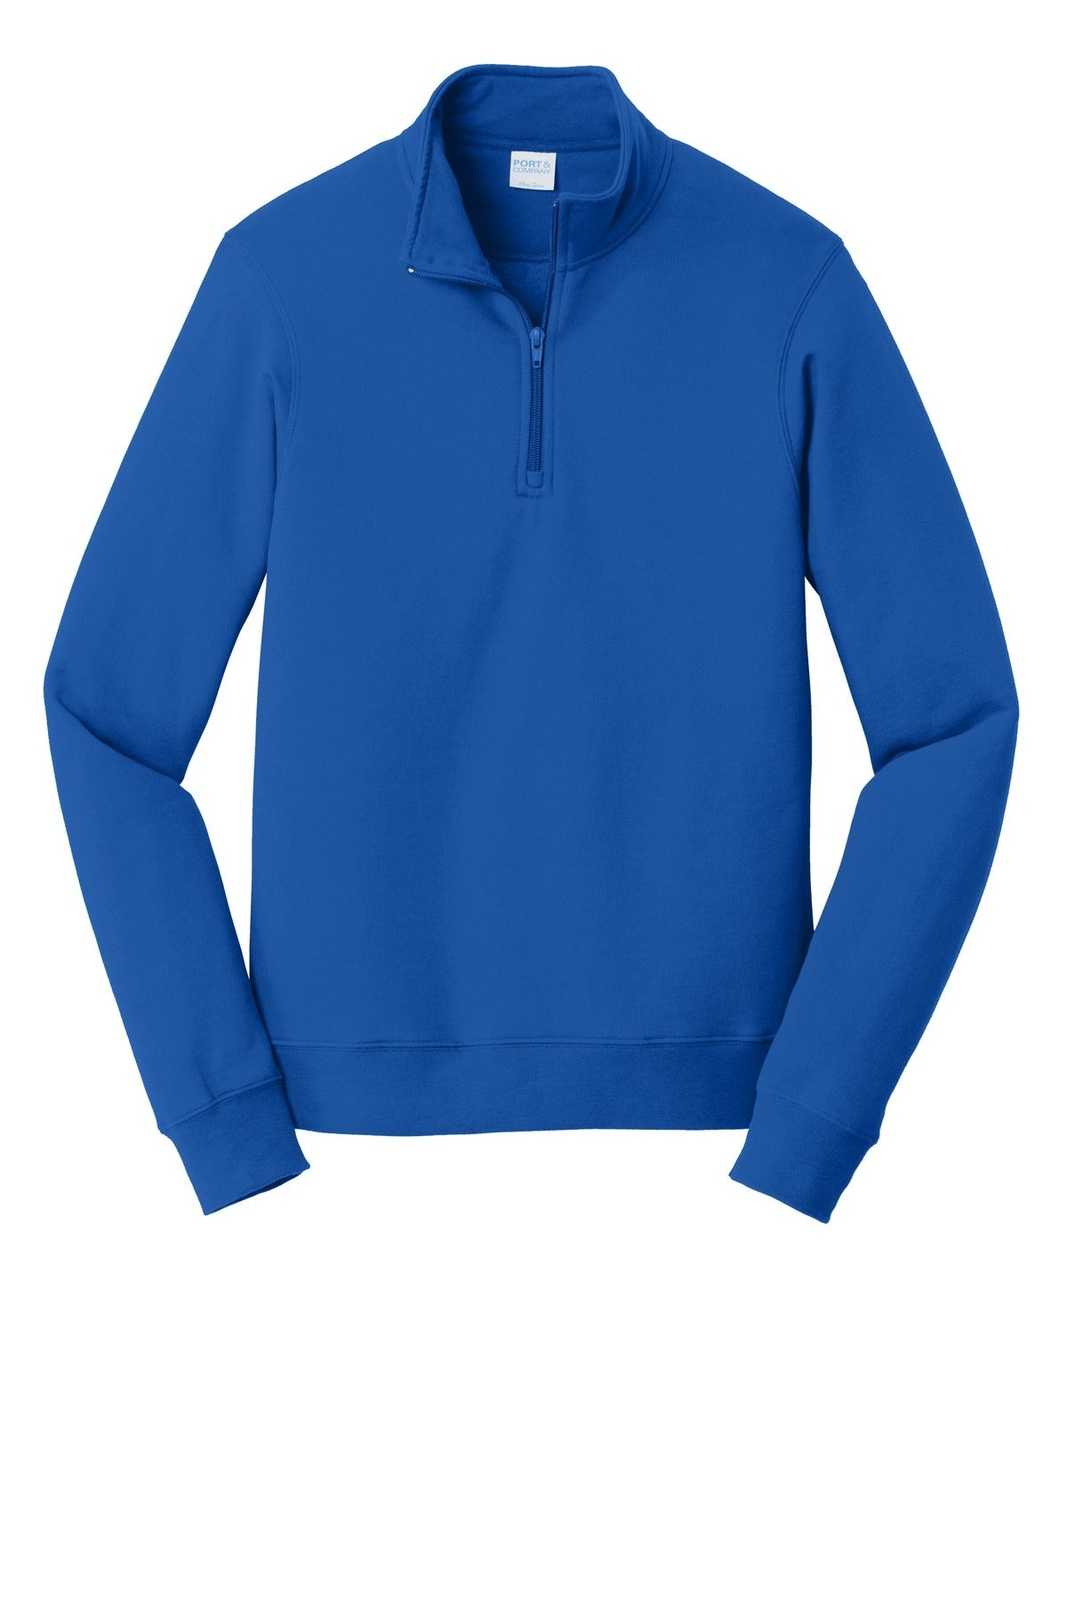 Port & Company PC850Q Fan Favorite Fleece 1/4-Zip Pullover Sweatshirt - True Royal - HIT a Double - 1